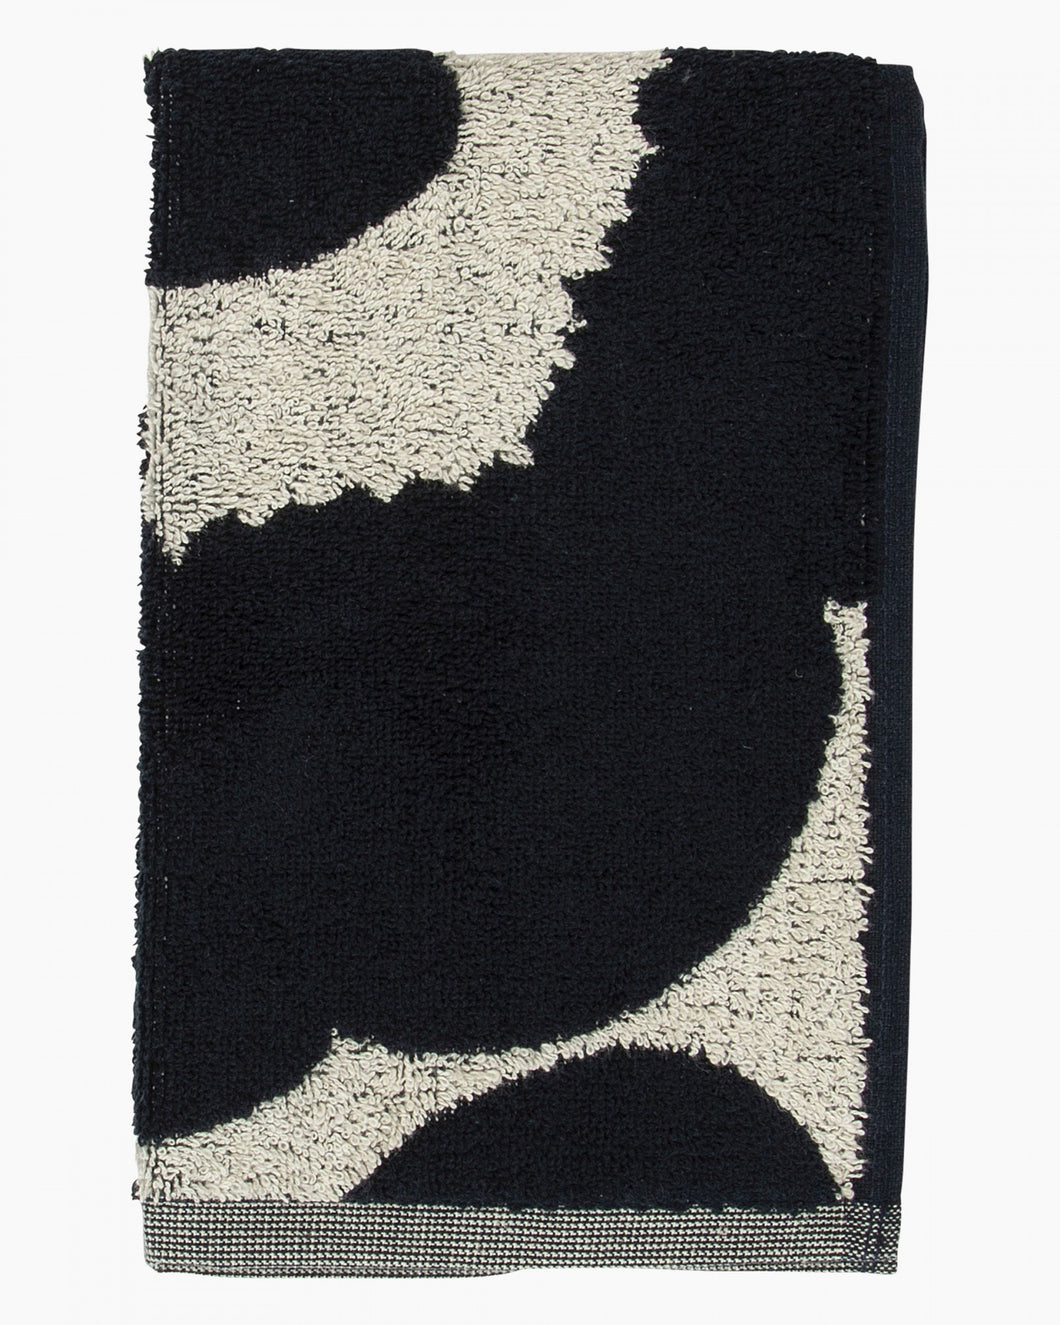 Unikko Guest Towel, 30cm x 50cm